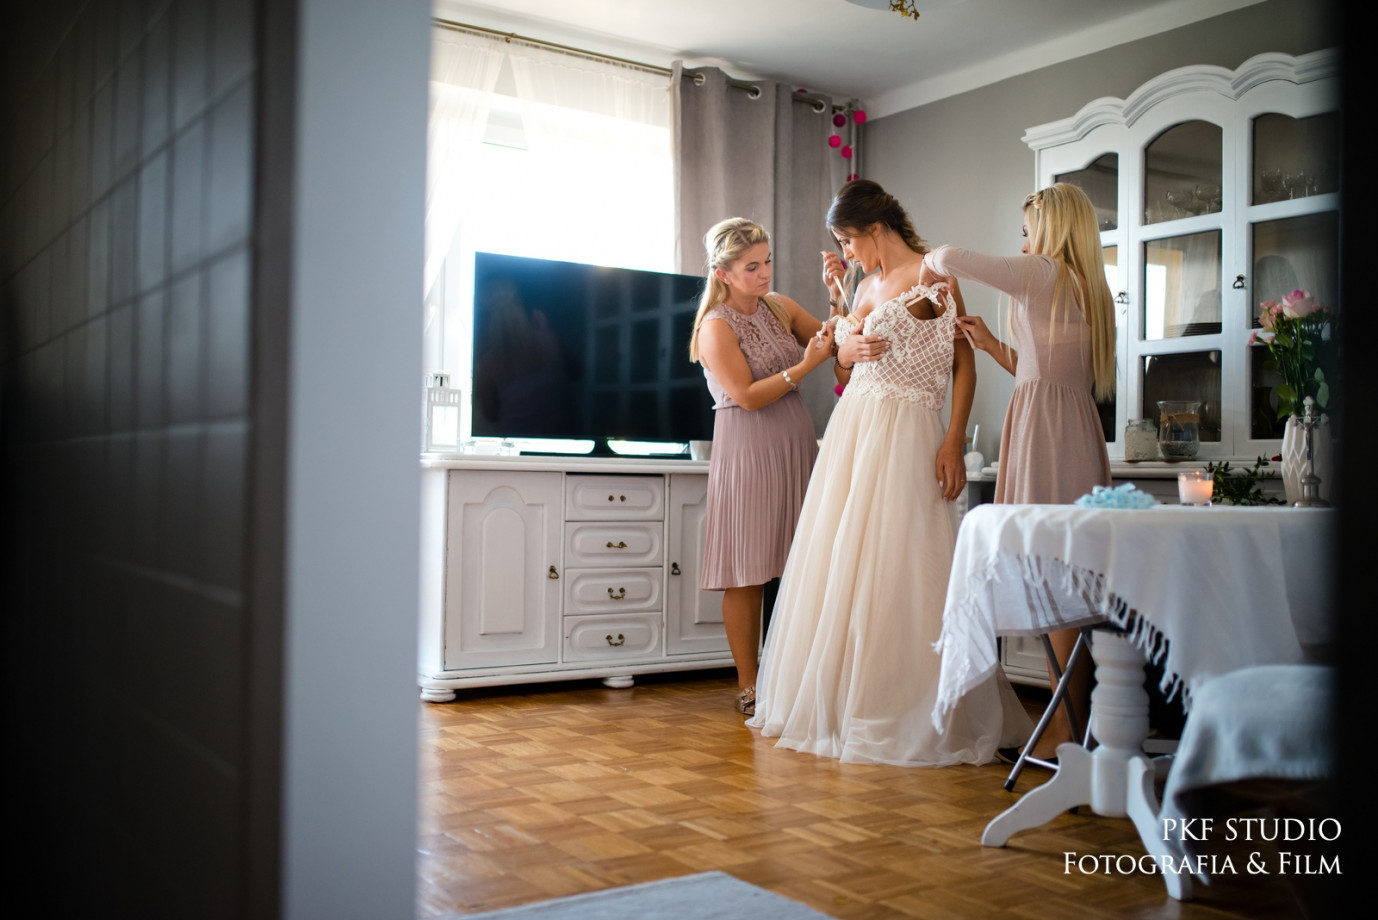 fotograf rzeszow pkf-studio portfolio zdjecia slubne inspiracje wesele plener slubny sesja slubna